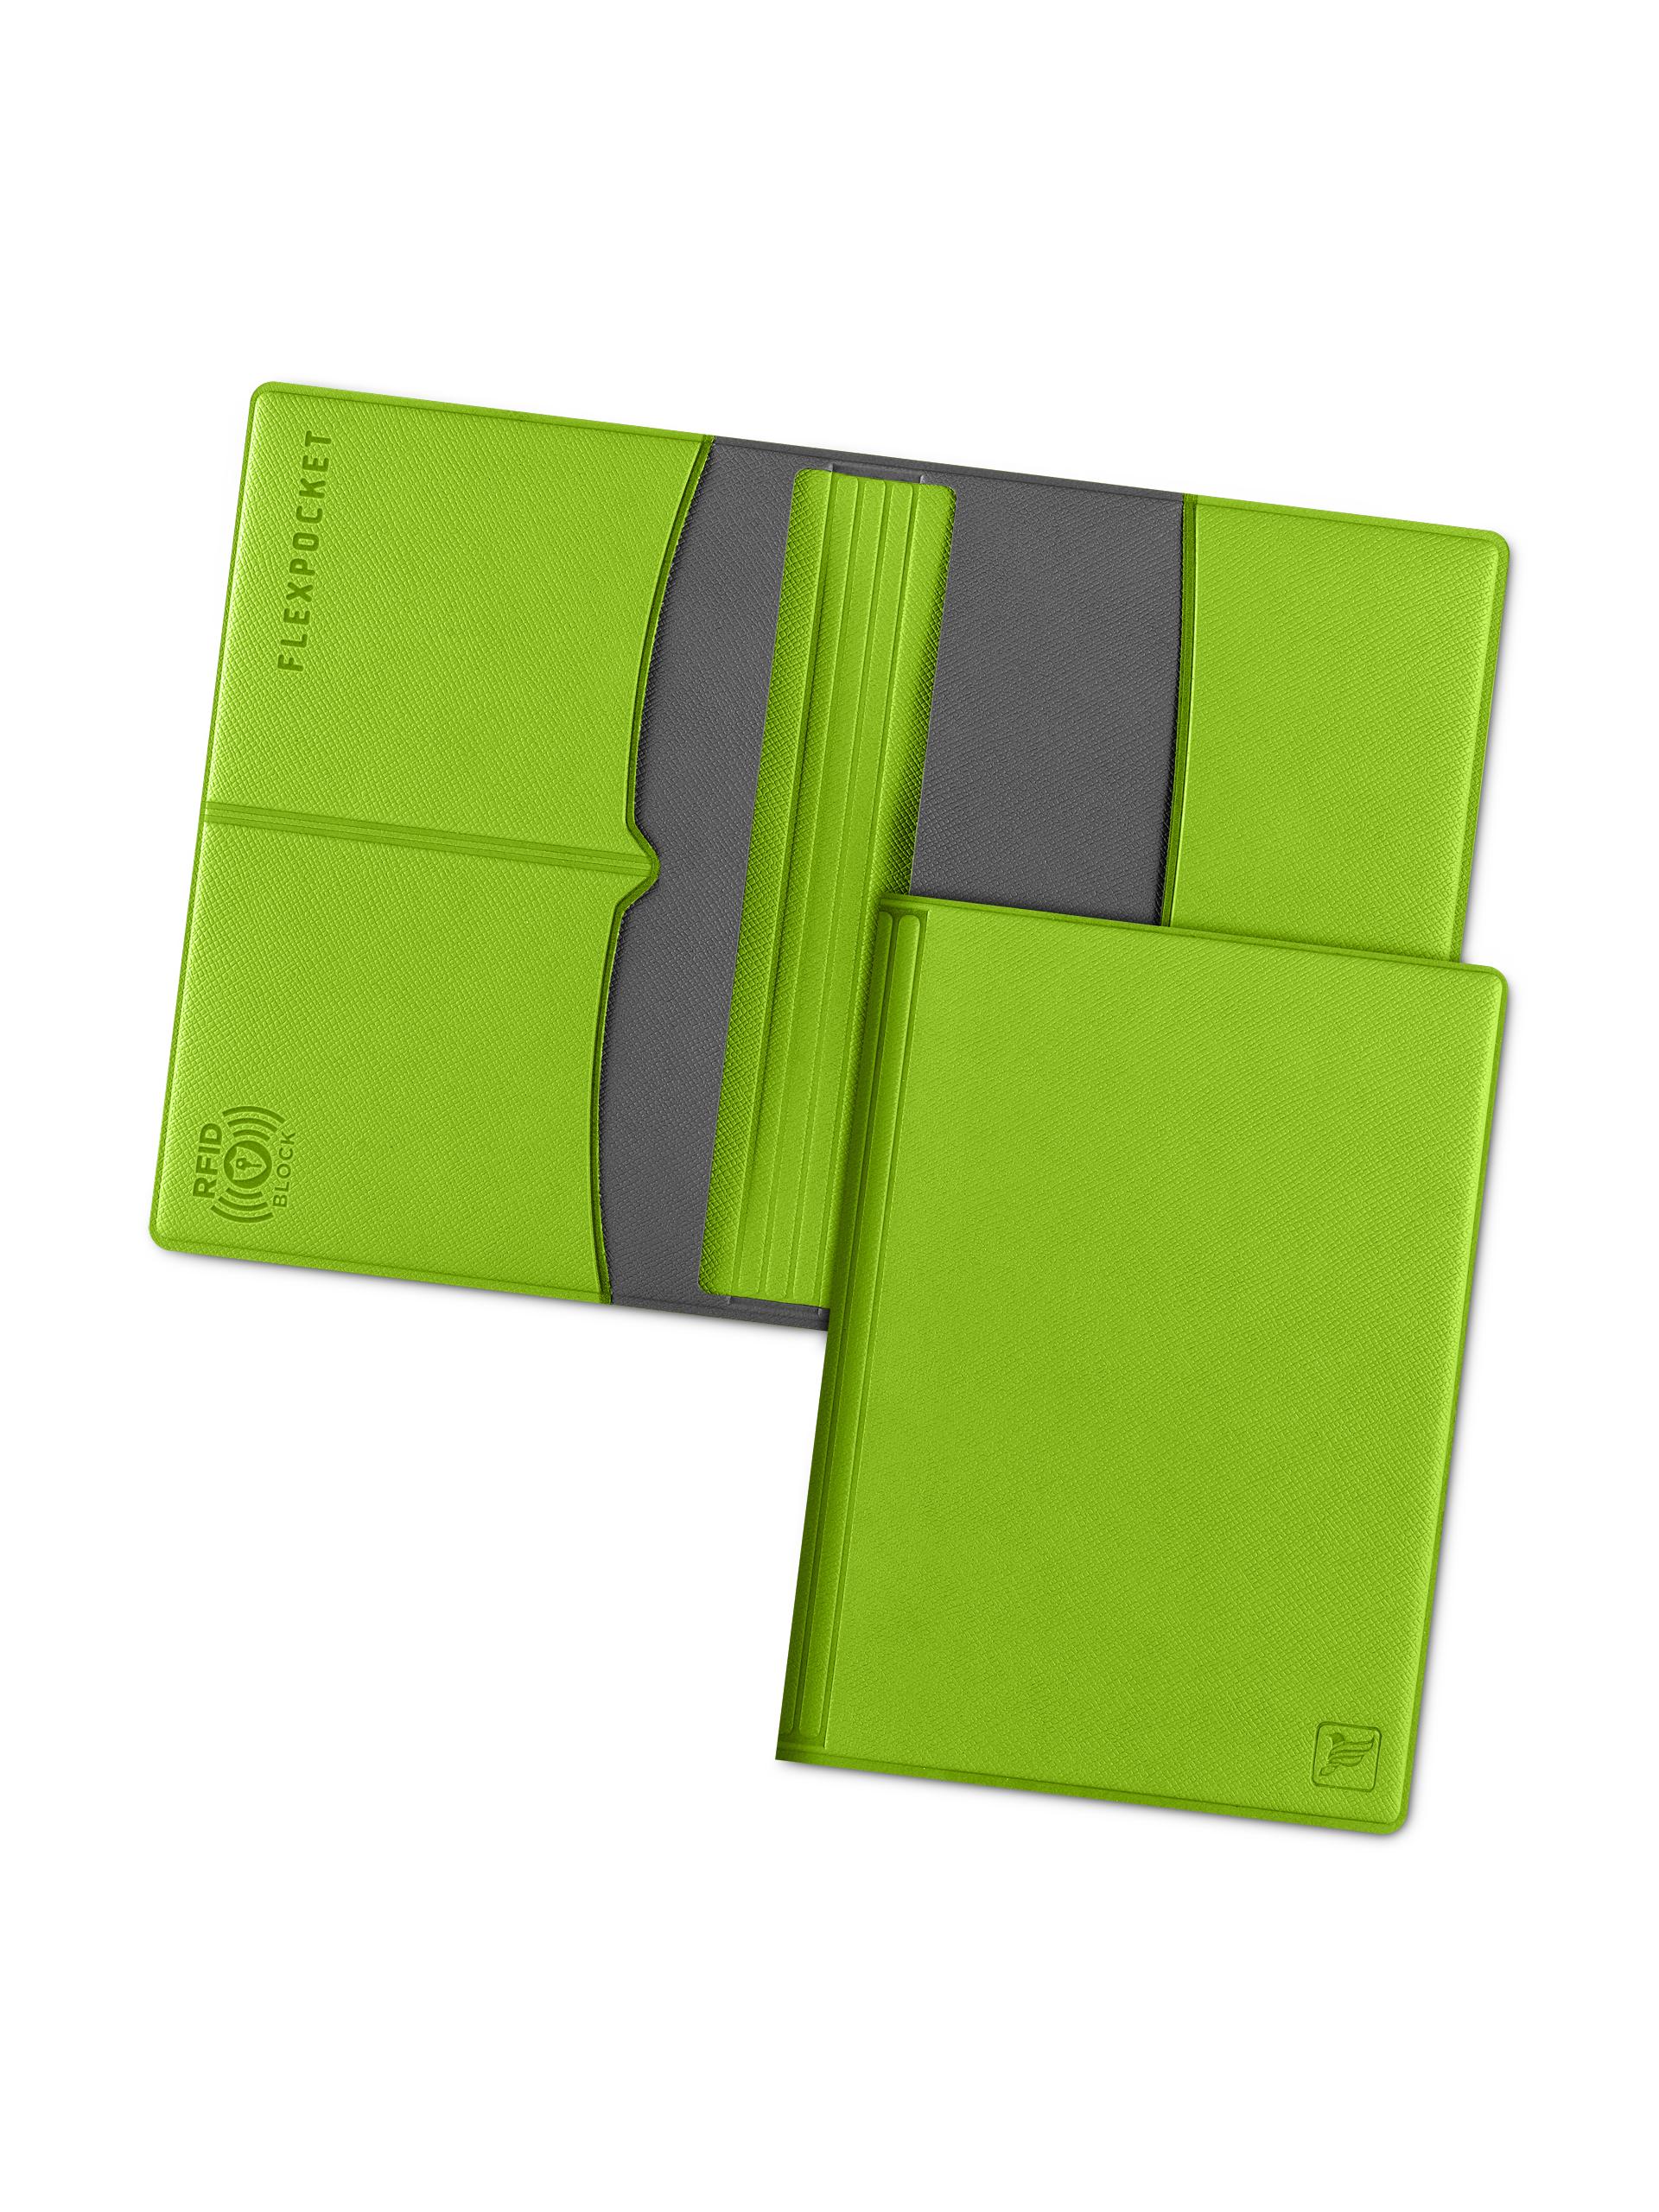 фото Обложка для паспорта с rfid защитой flexpocket kop-03rfid зеленая